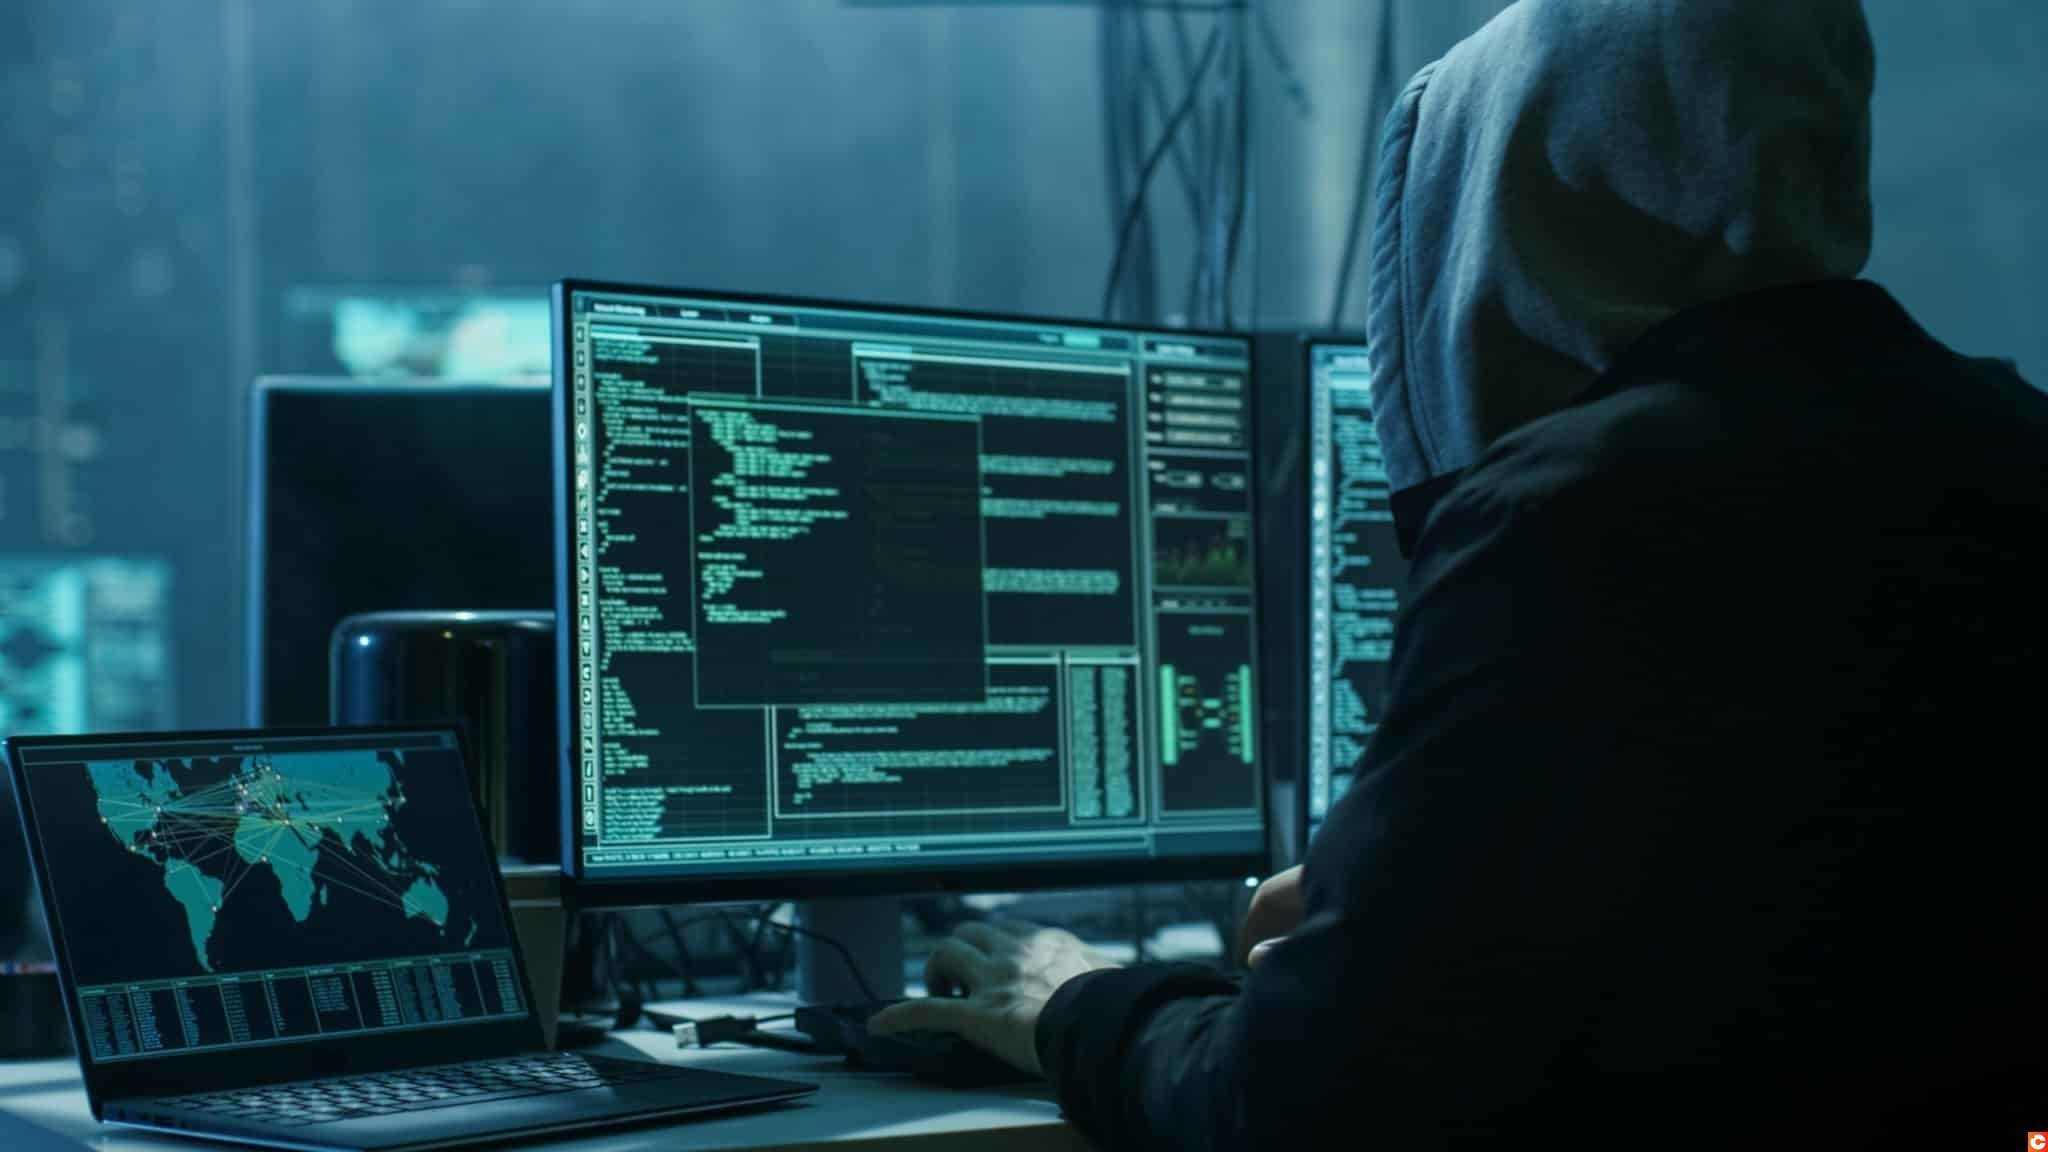 Los hackers que robaron 611 millones de dólares están listos para recuperar los fondos robados